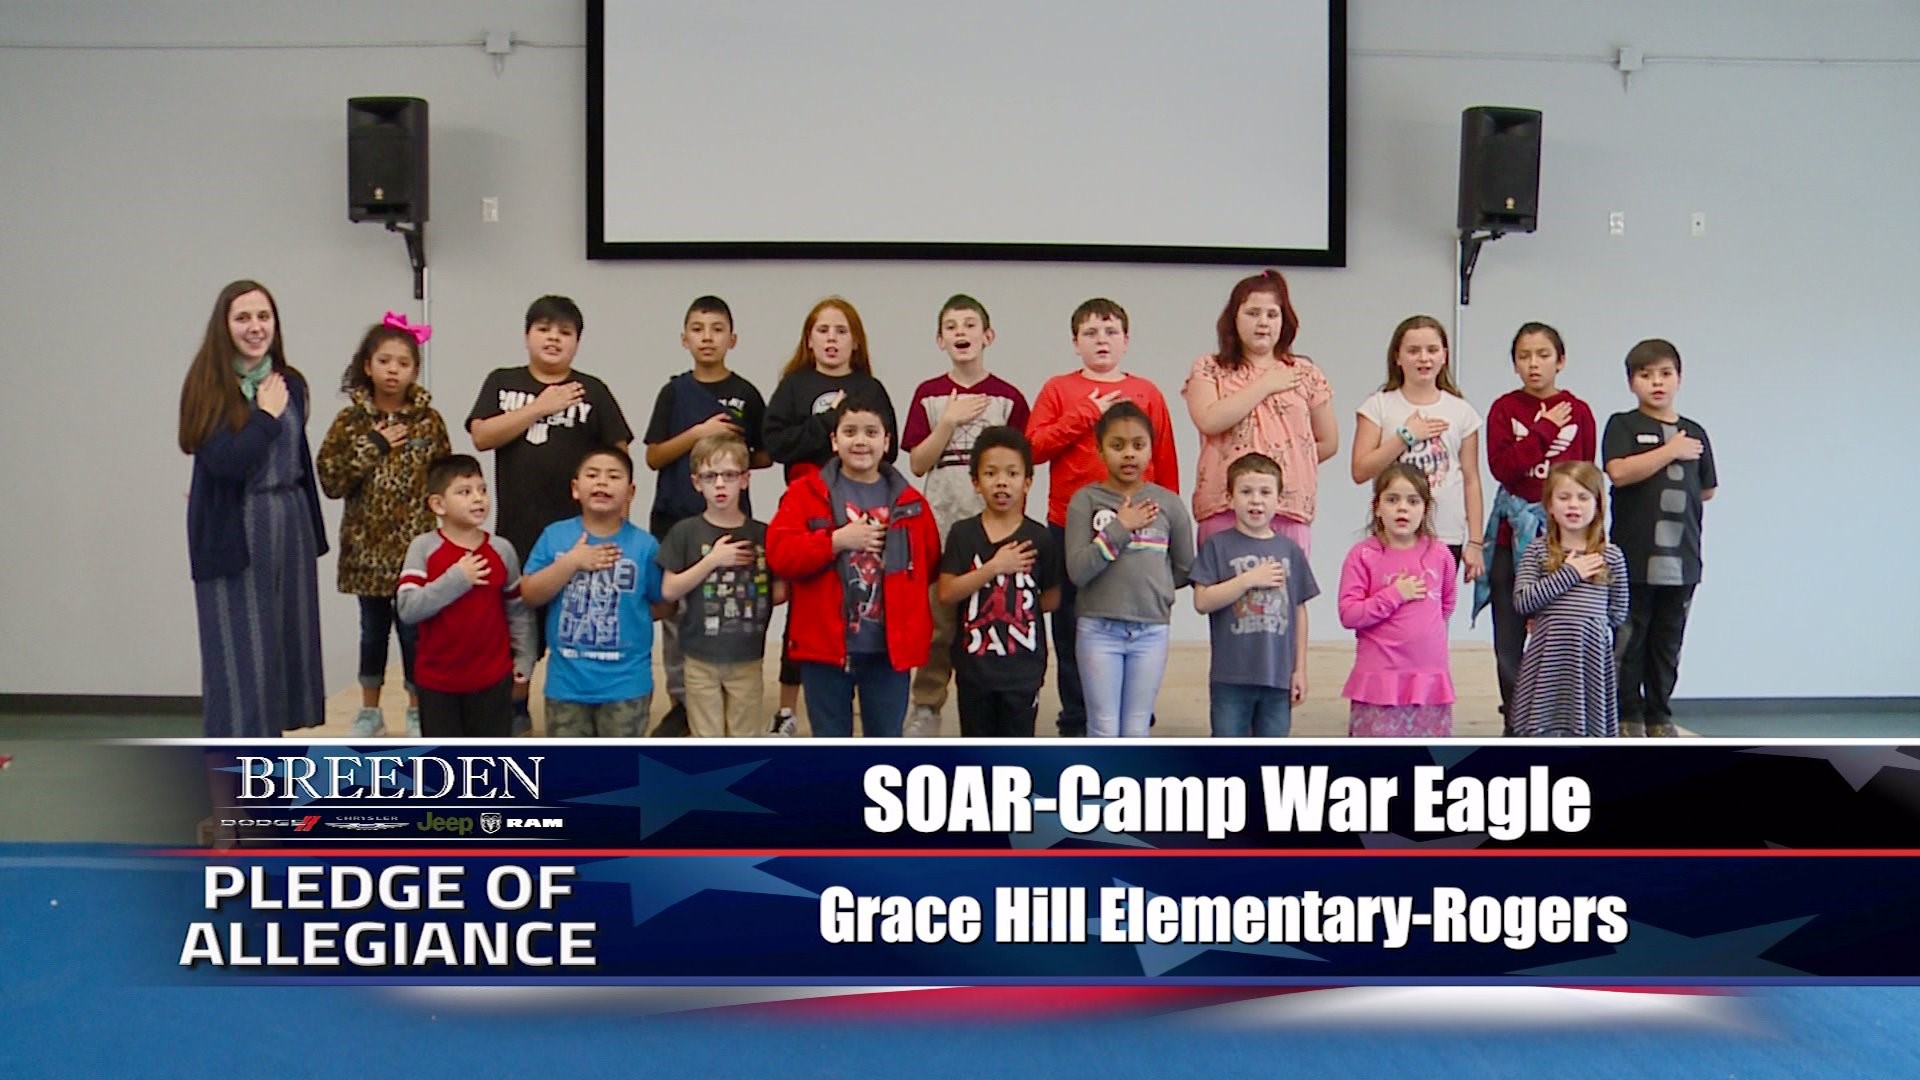 Soar-Camp War Eagle Grace hill Elementary, Rogers